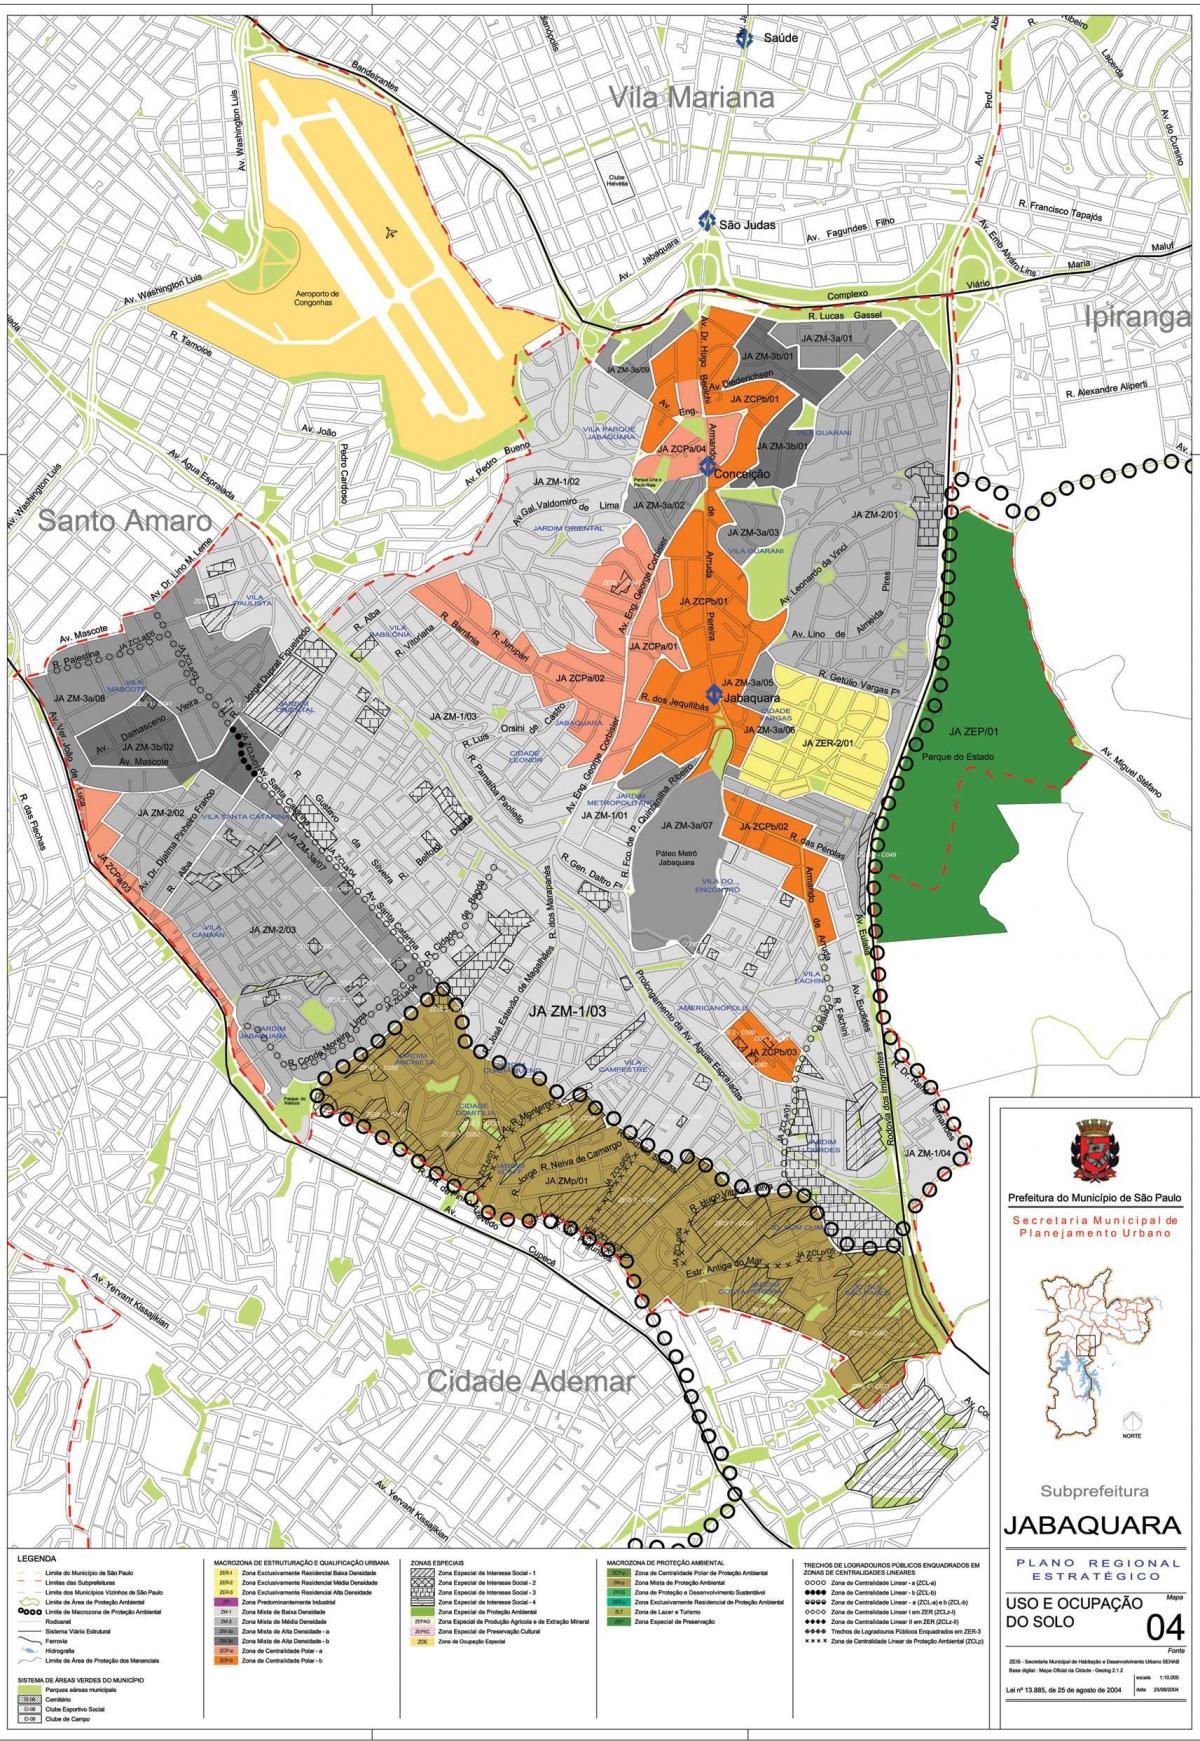 Kaart van Jabaquara São Paulo - Besetting van die grond